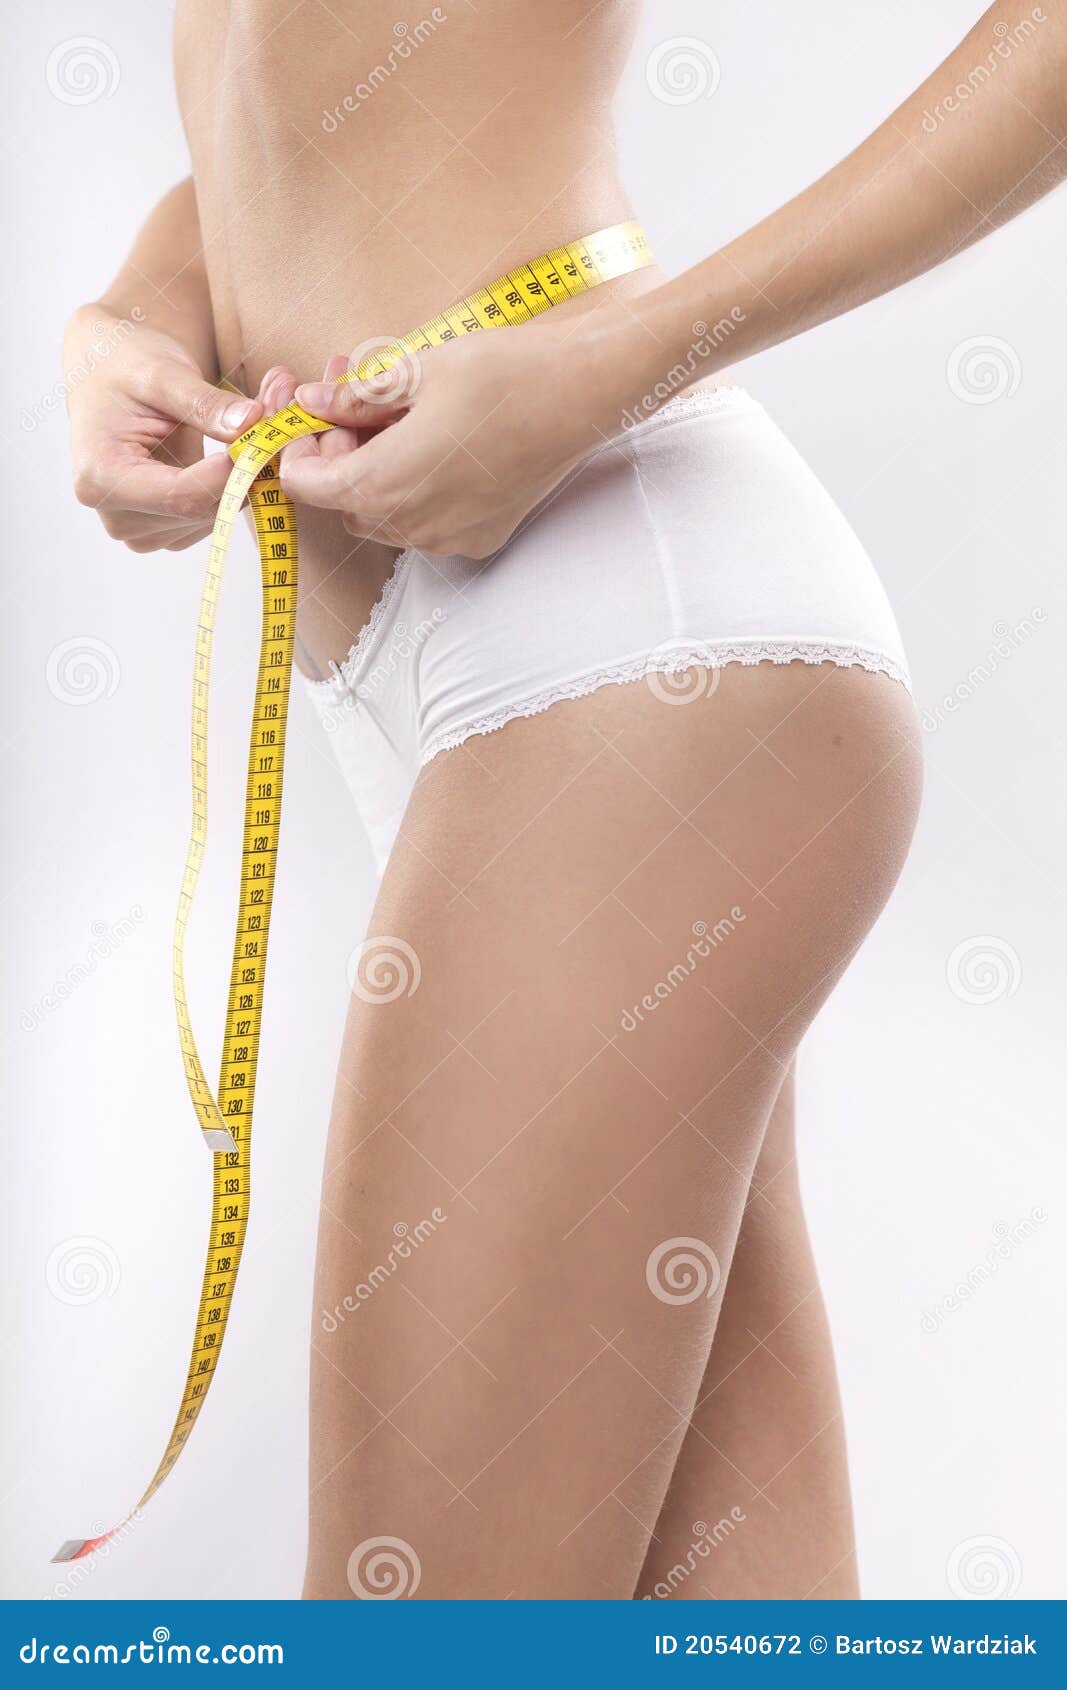 165 Beautiful Sporty Female Body Yellow Underwear Stock Photos